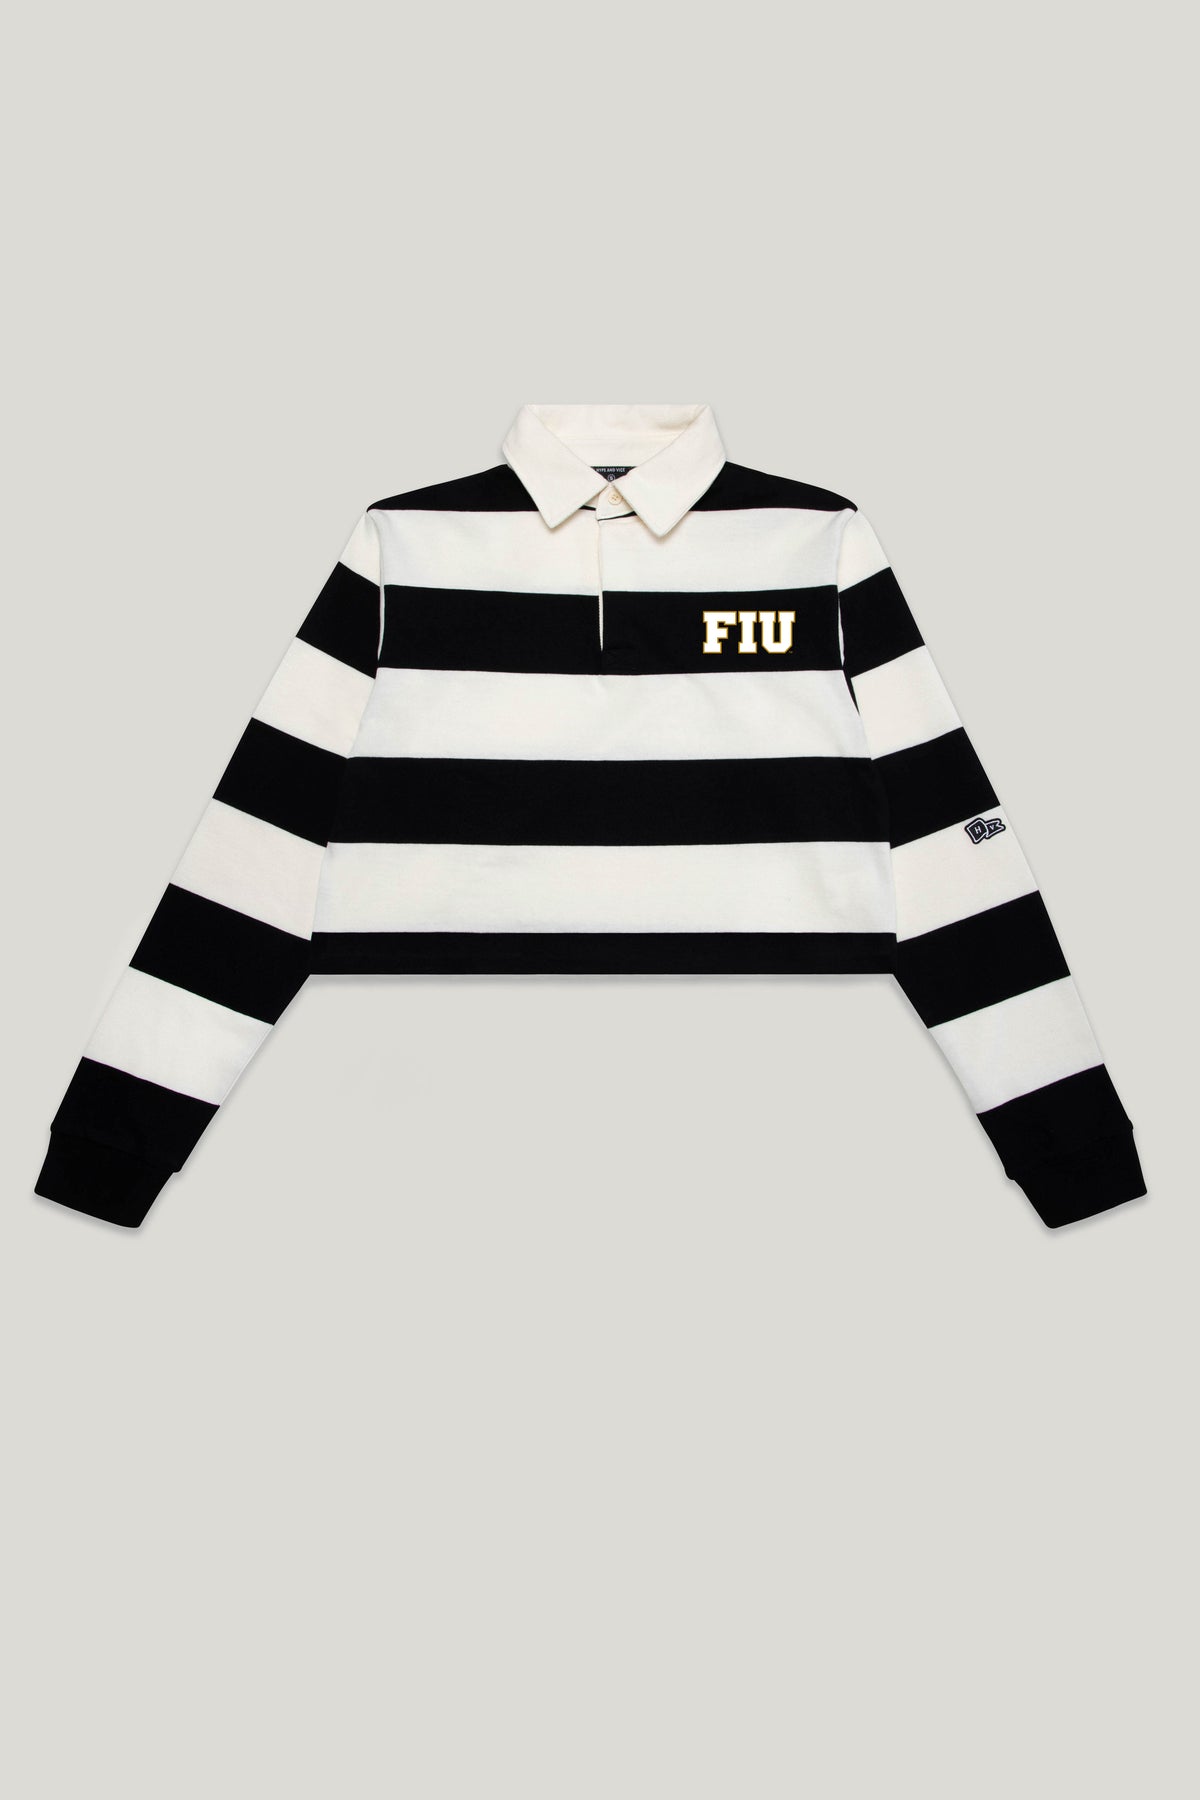 FIU Rugby Top